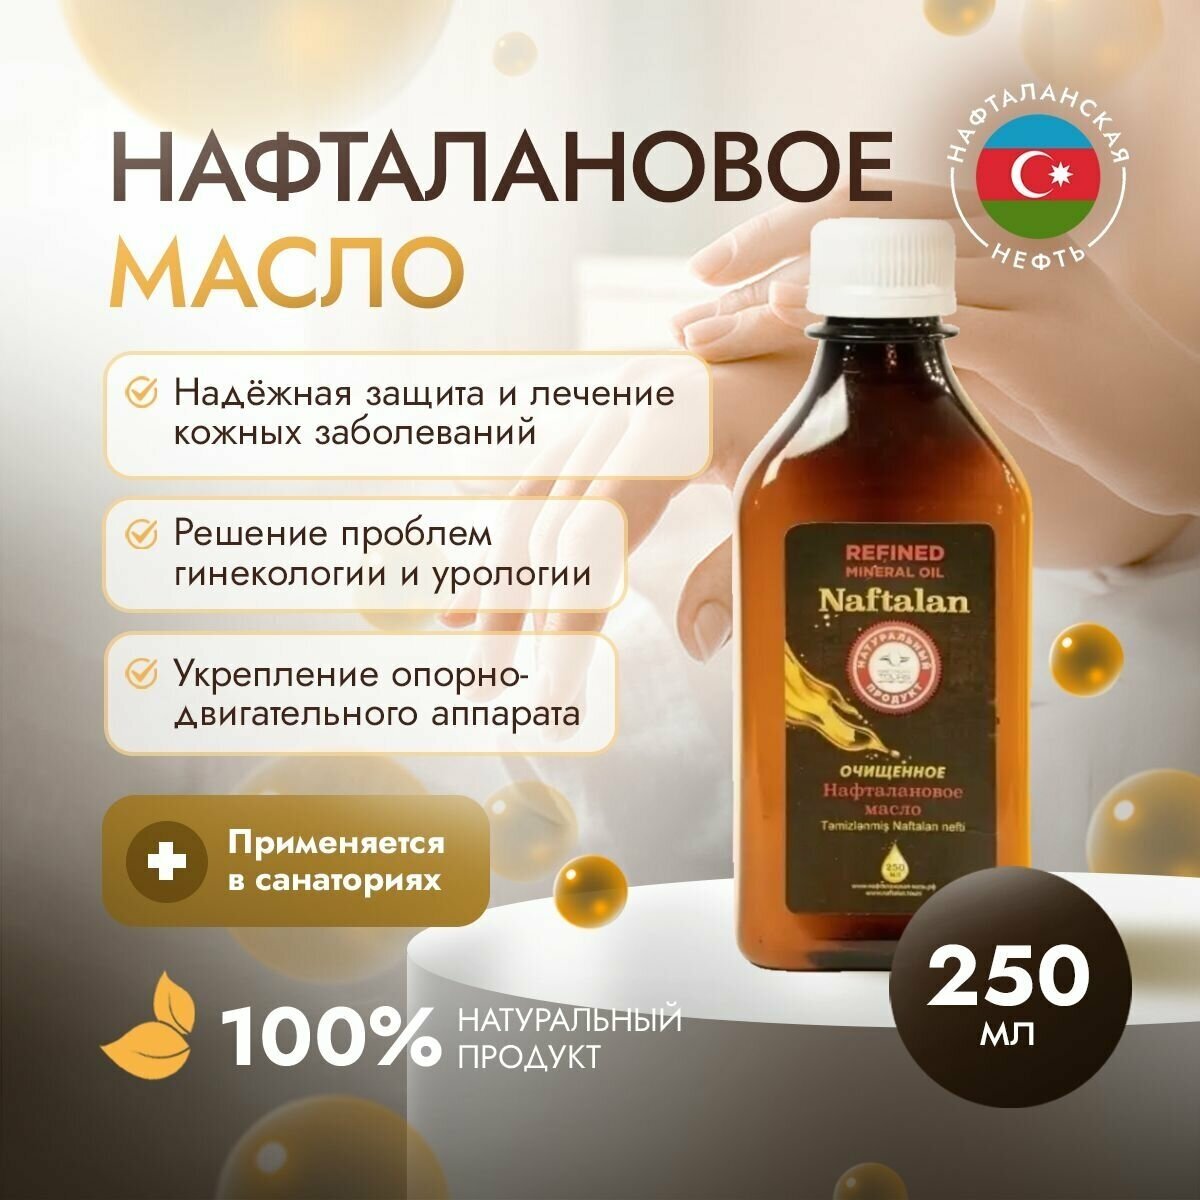 Organic Naftalan Oil - Нафталановое масло 250 мл. Средство для борьбы с дерматитом, псориазом, себорея, для кожи и суставов, против шелушения